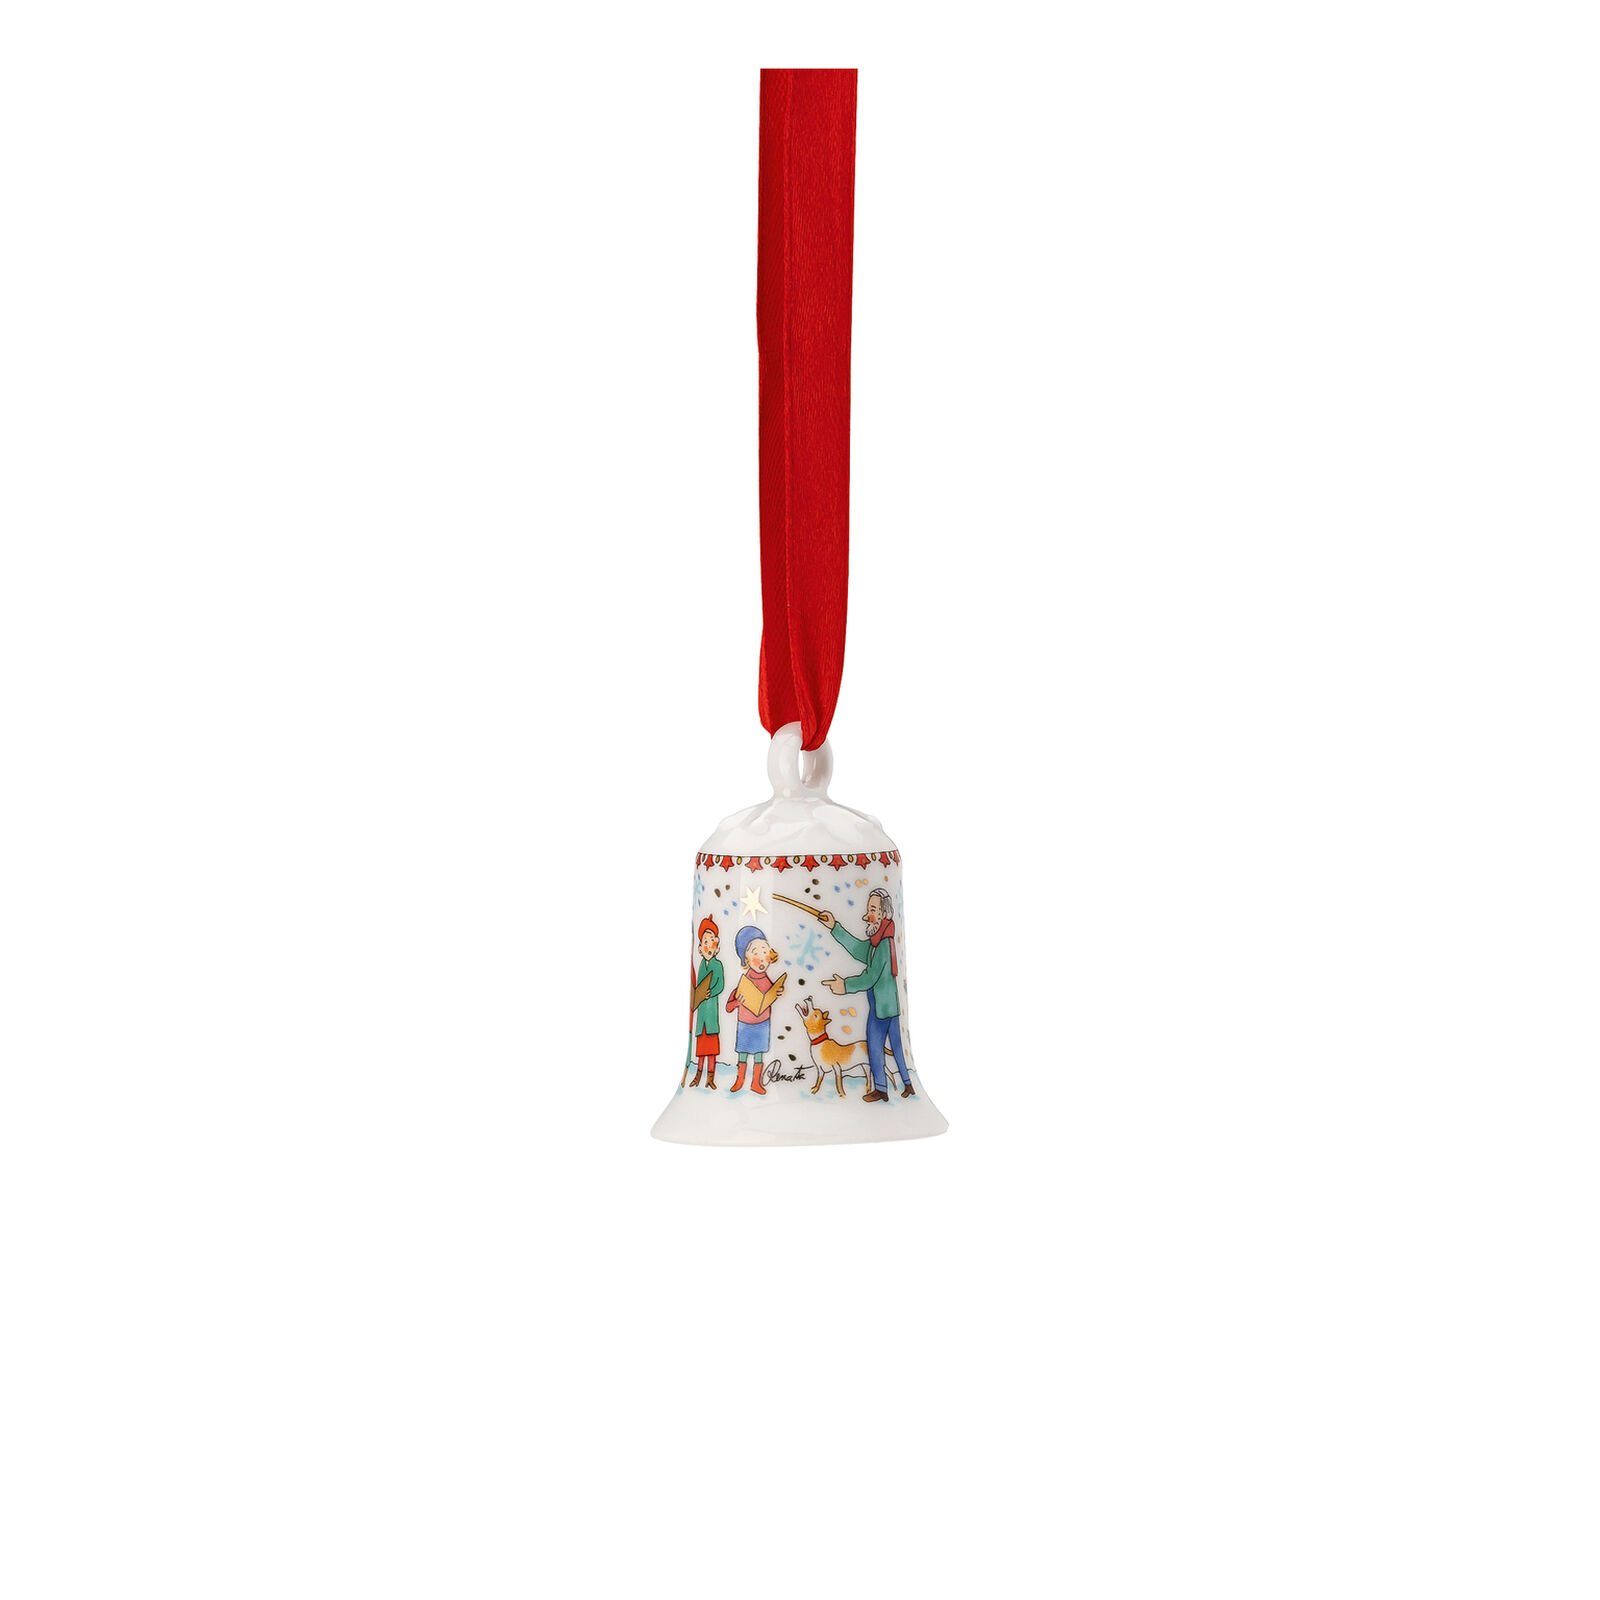 Hutschenreuther Hängedekoration Kinderchor Mini-Glocke Sammelkollektion 23 Weihnachtsklänge (1 St), mit liebevollen Details